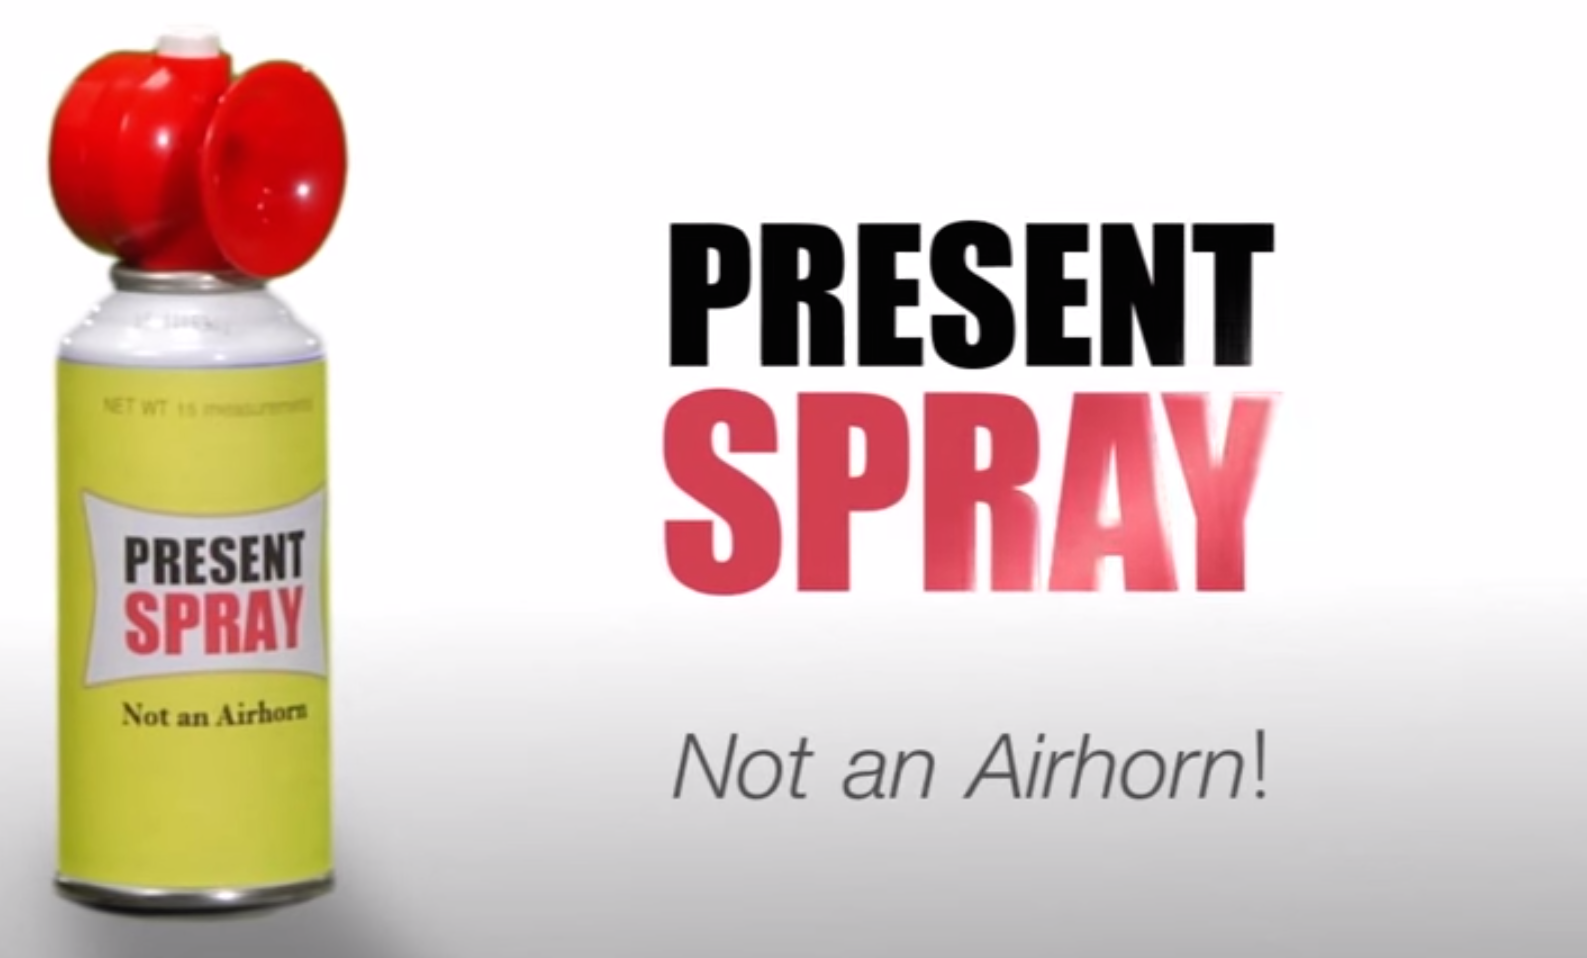 Present Spray [Video]